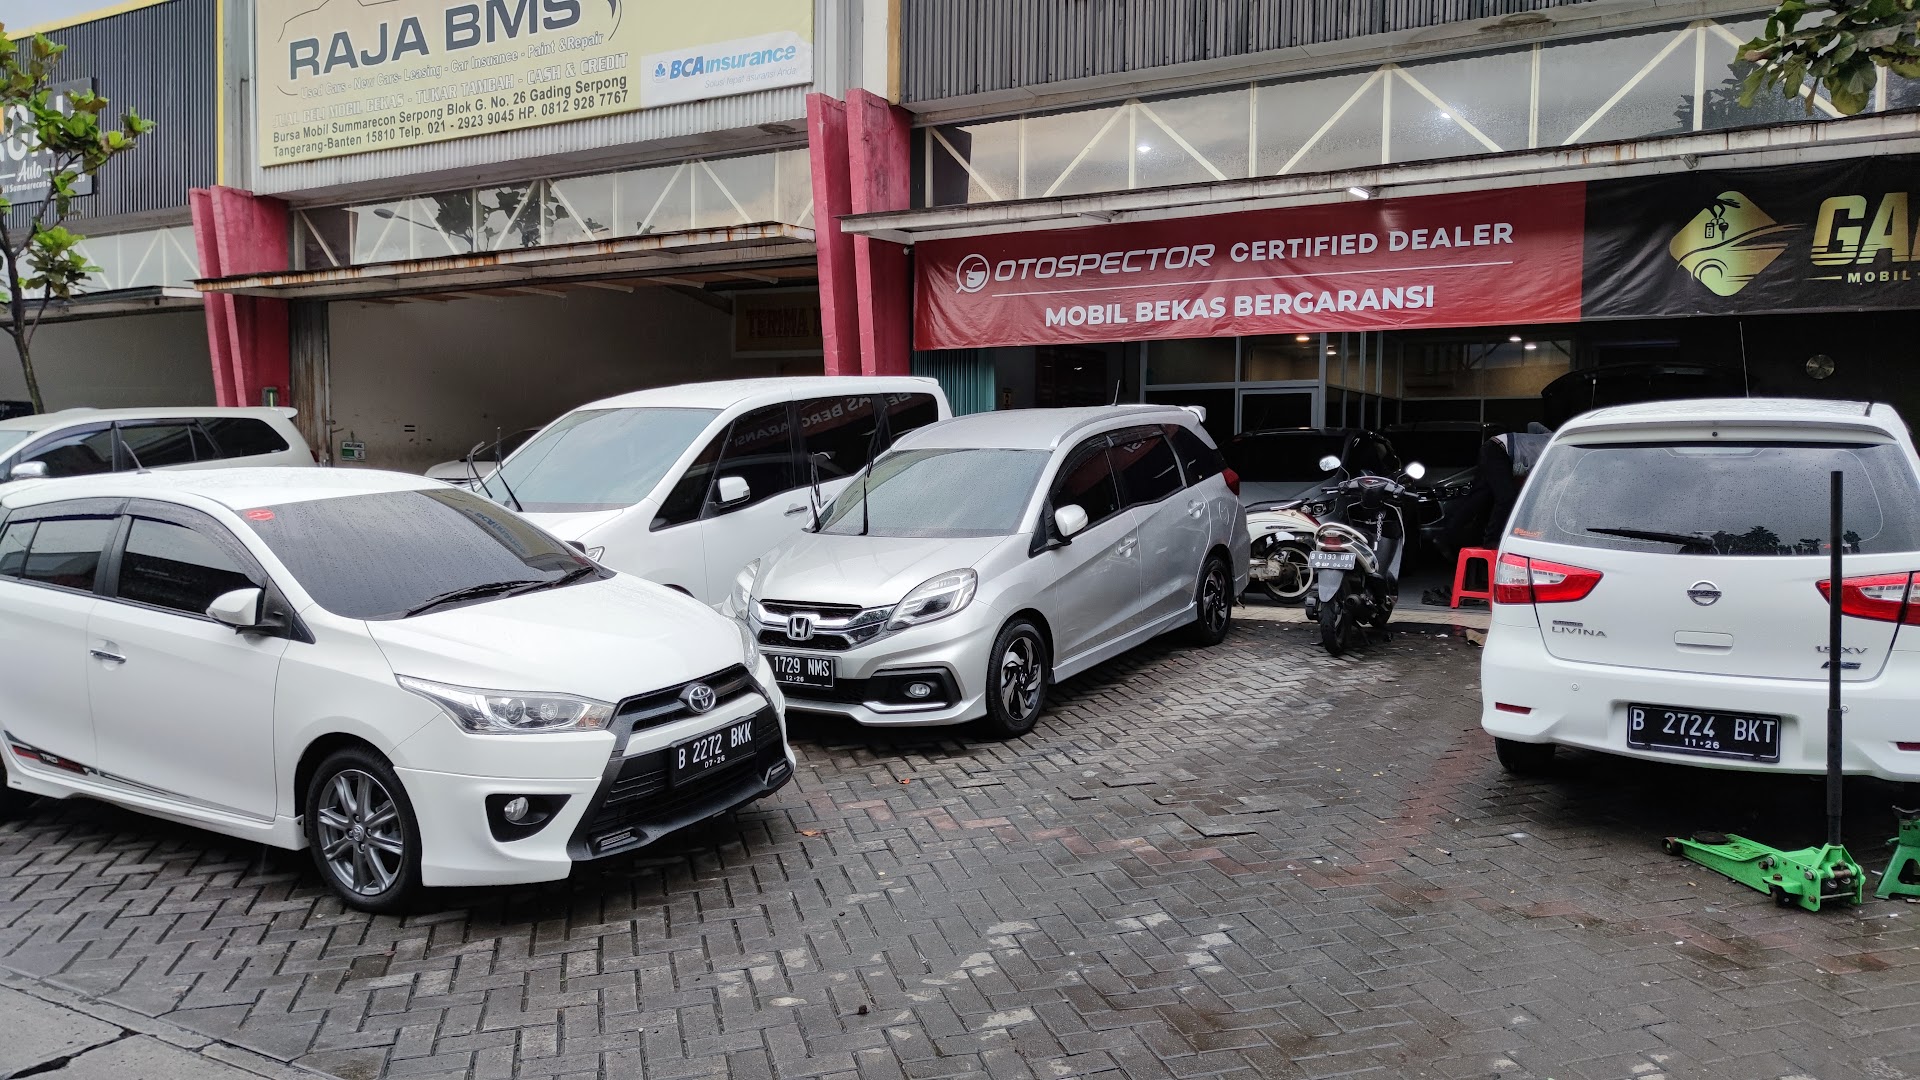 Bms Bursa Mobil Summarecon, Gading Serpong Photo